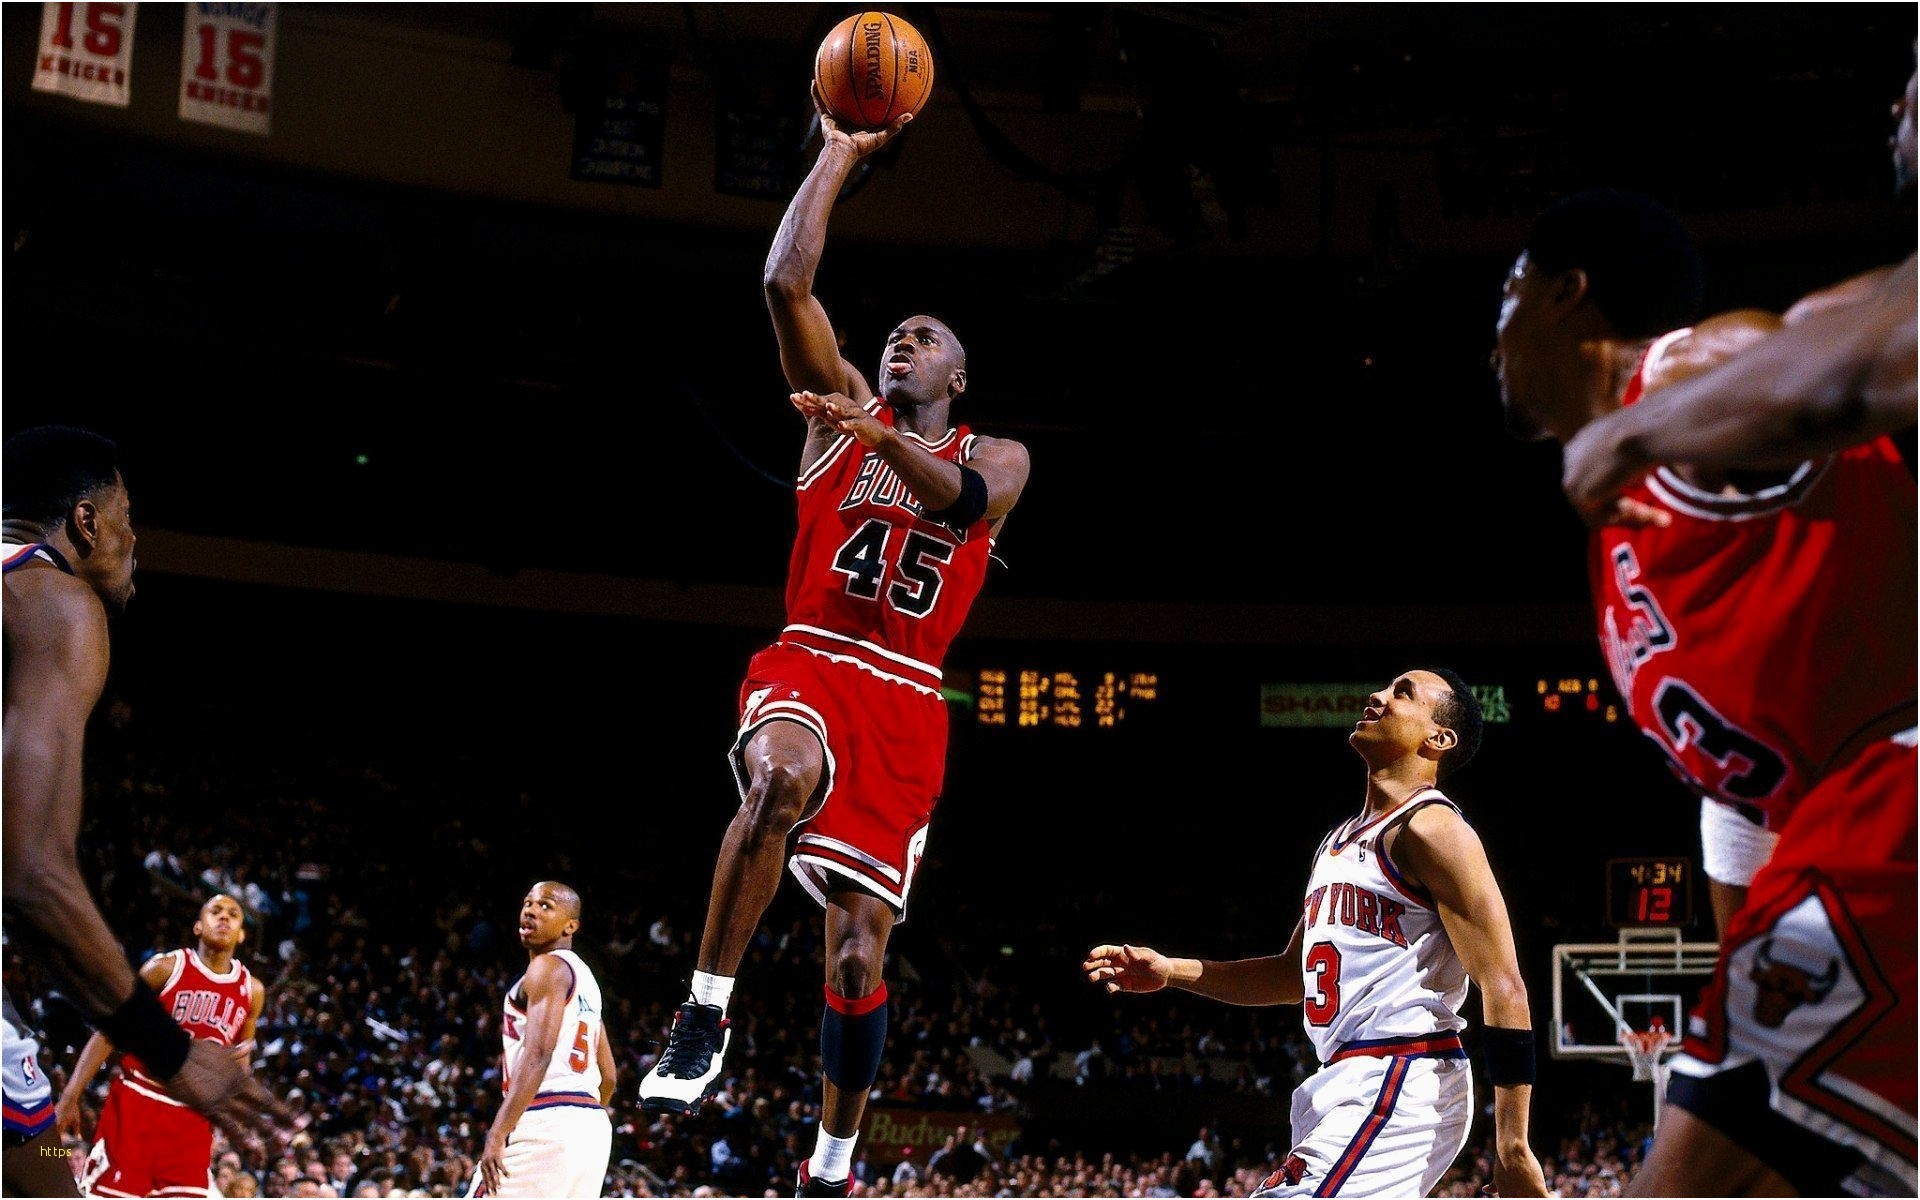 Michael Jordan 1920X1080 Wallpapers